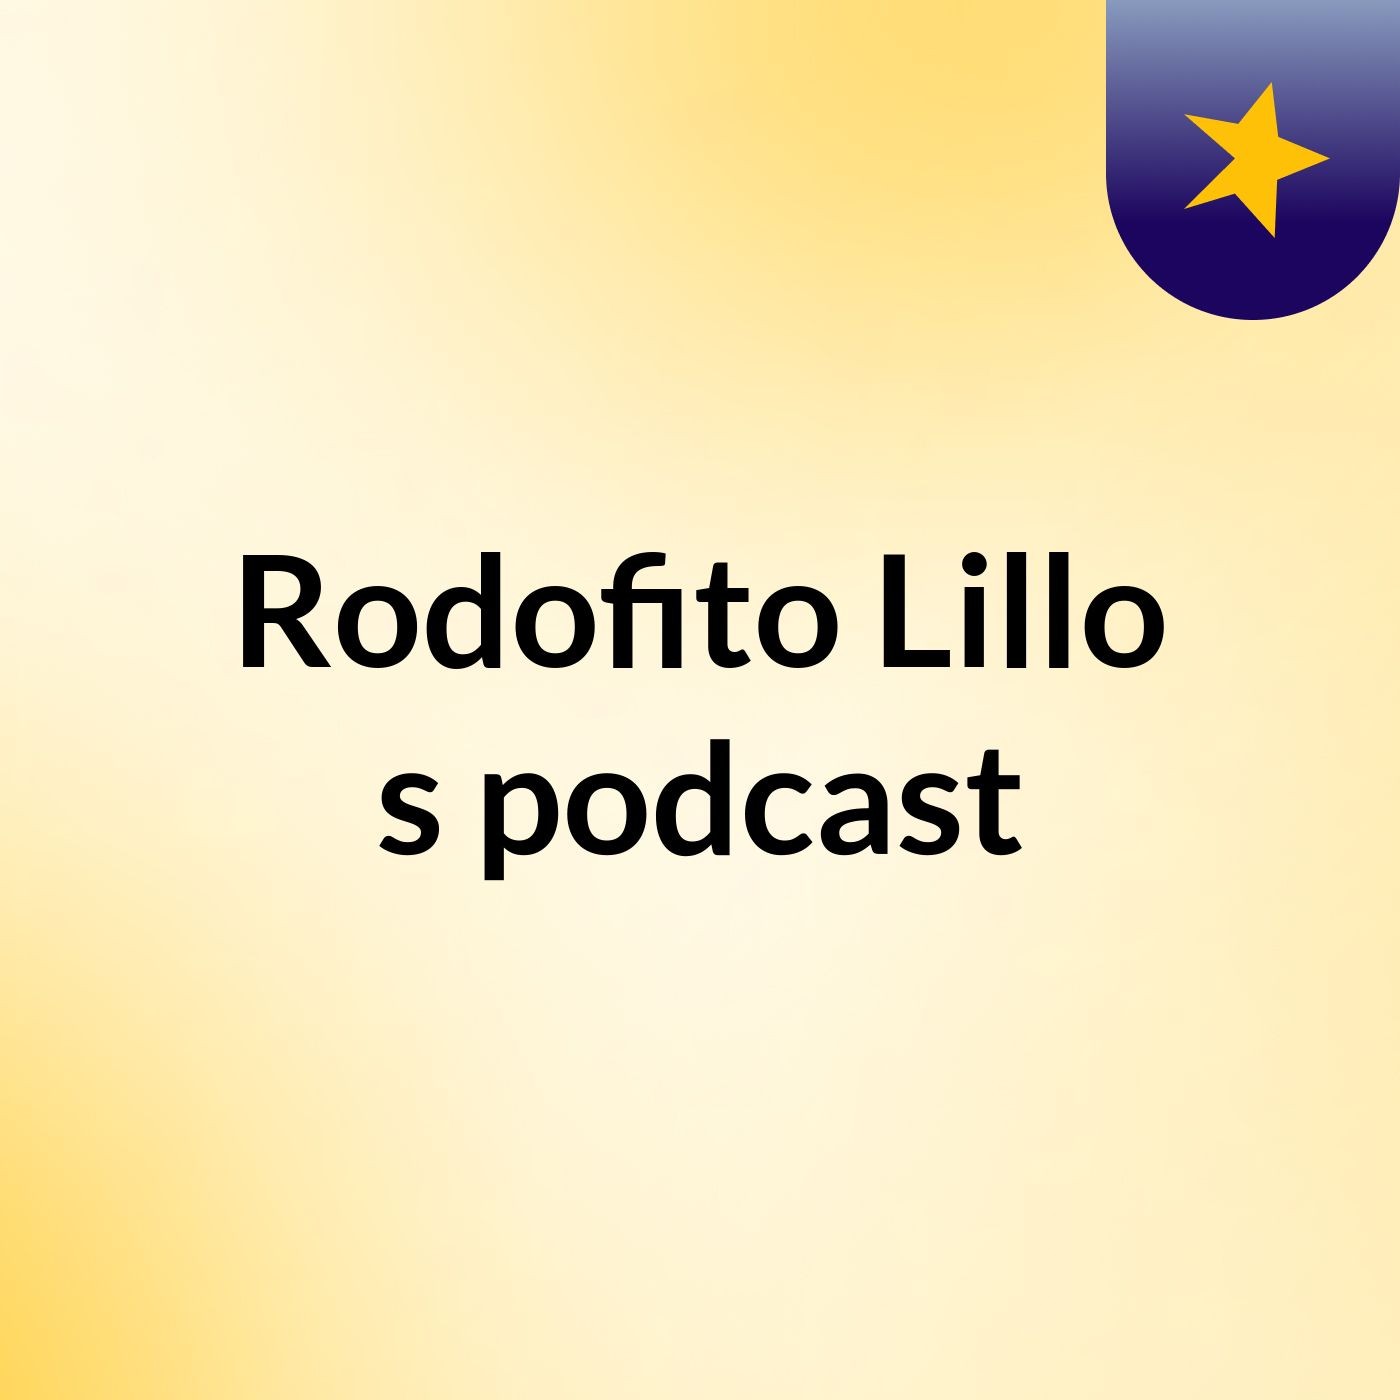 Rodofito Lillo's podcast